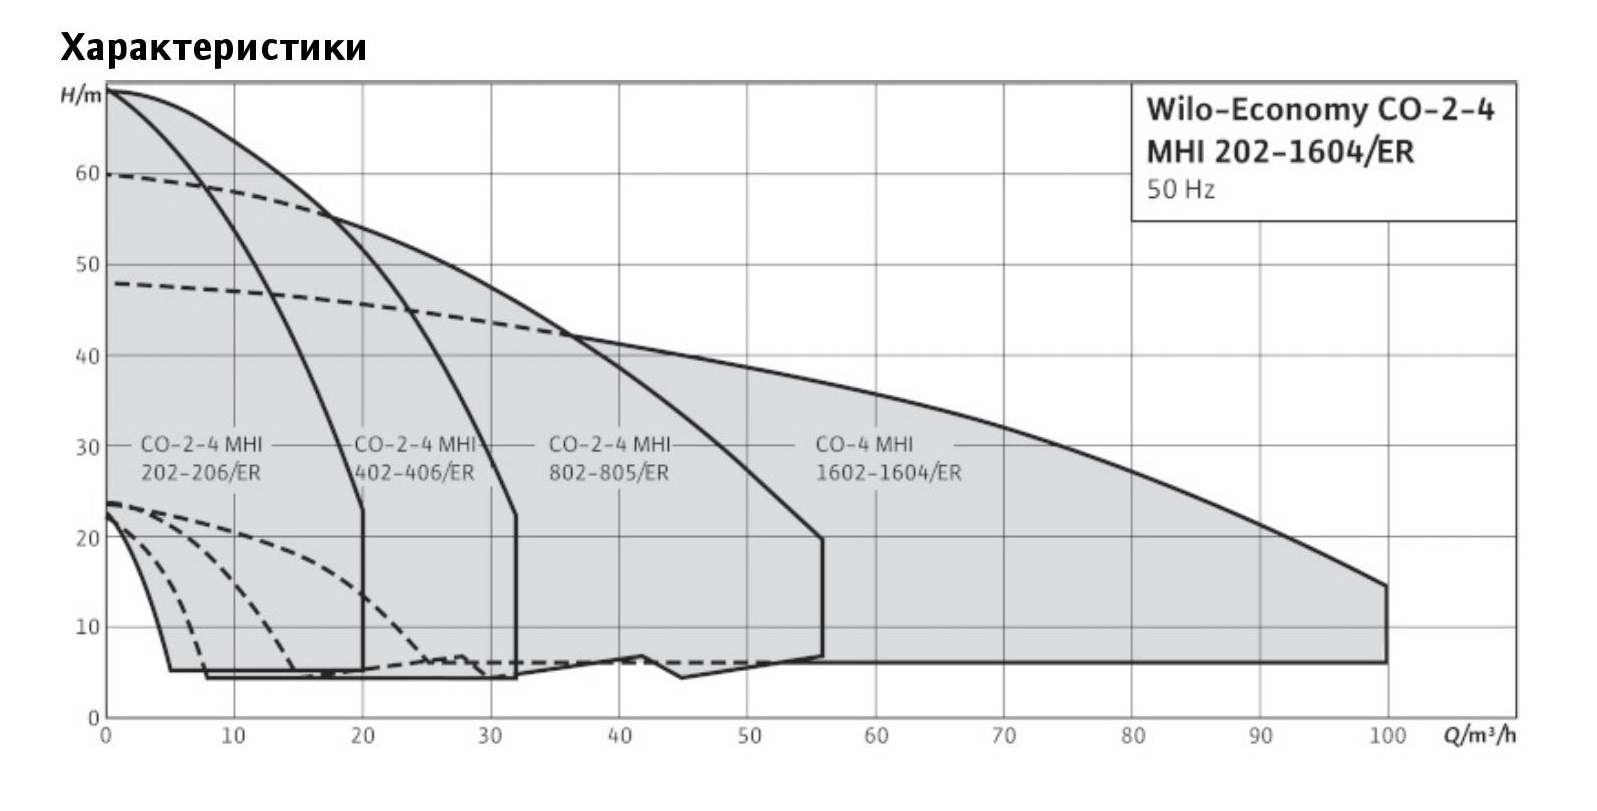 Wilo-Economy CO-4 MHI график